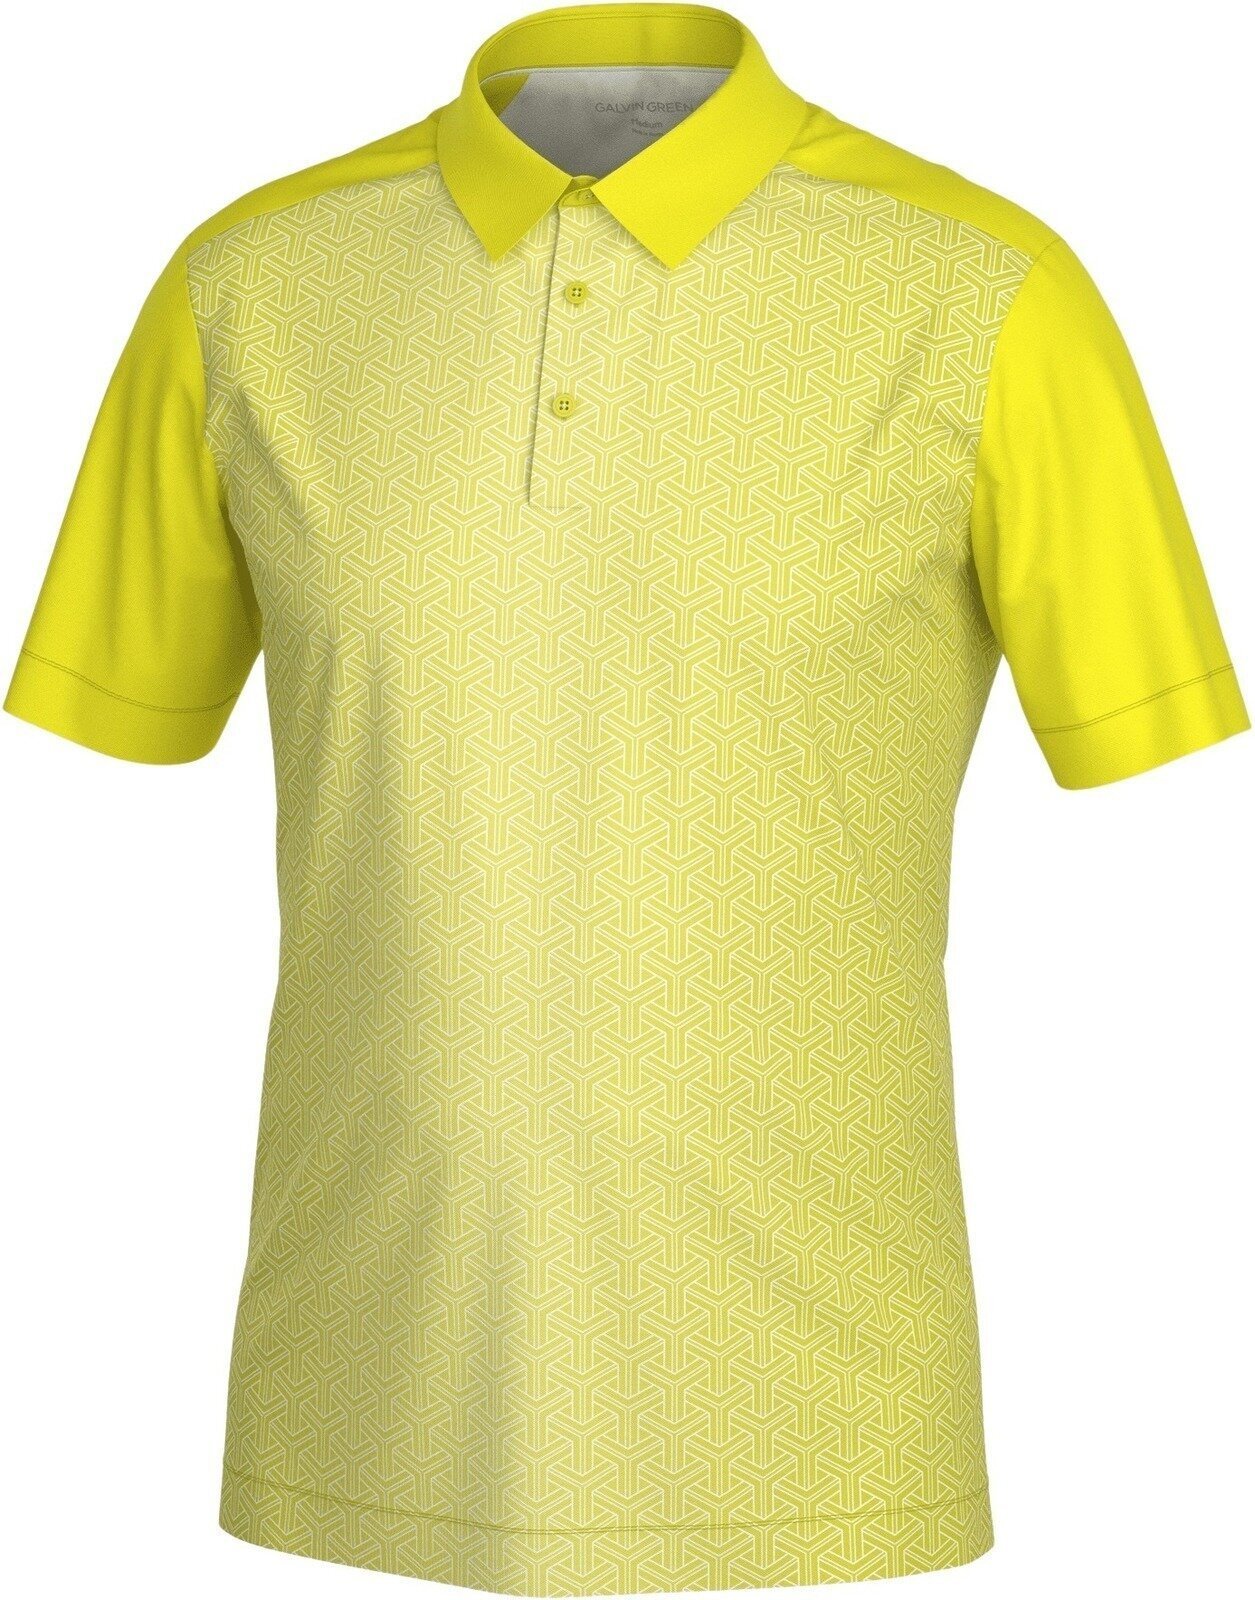 Polo Galvin Green Mile Mens Polo Shirt Lime/White 2XL Polo